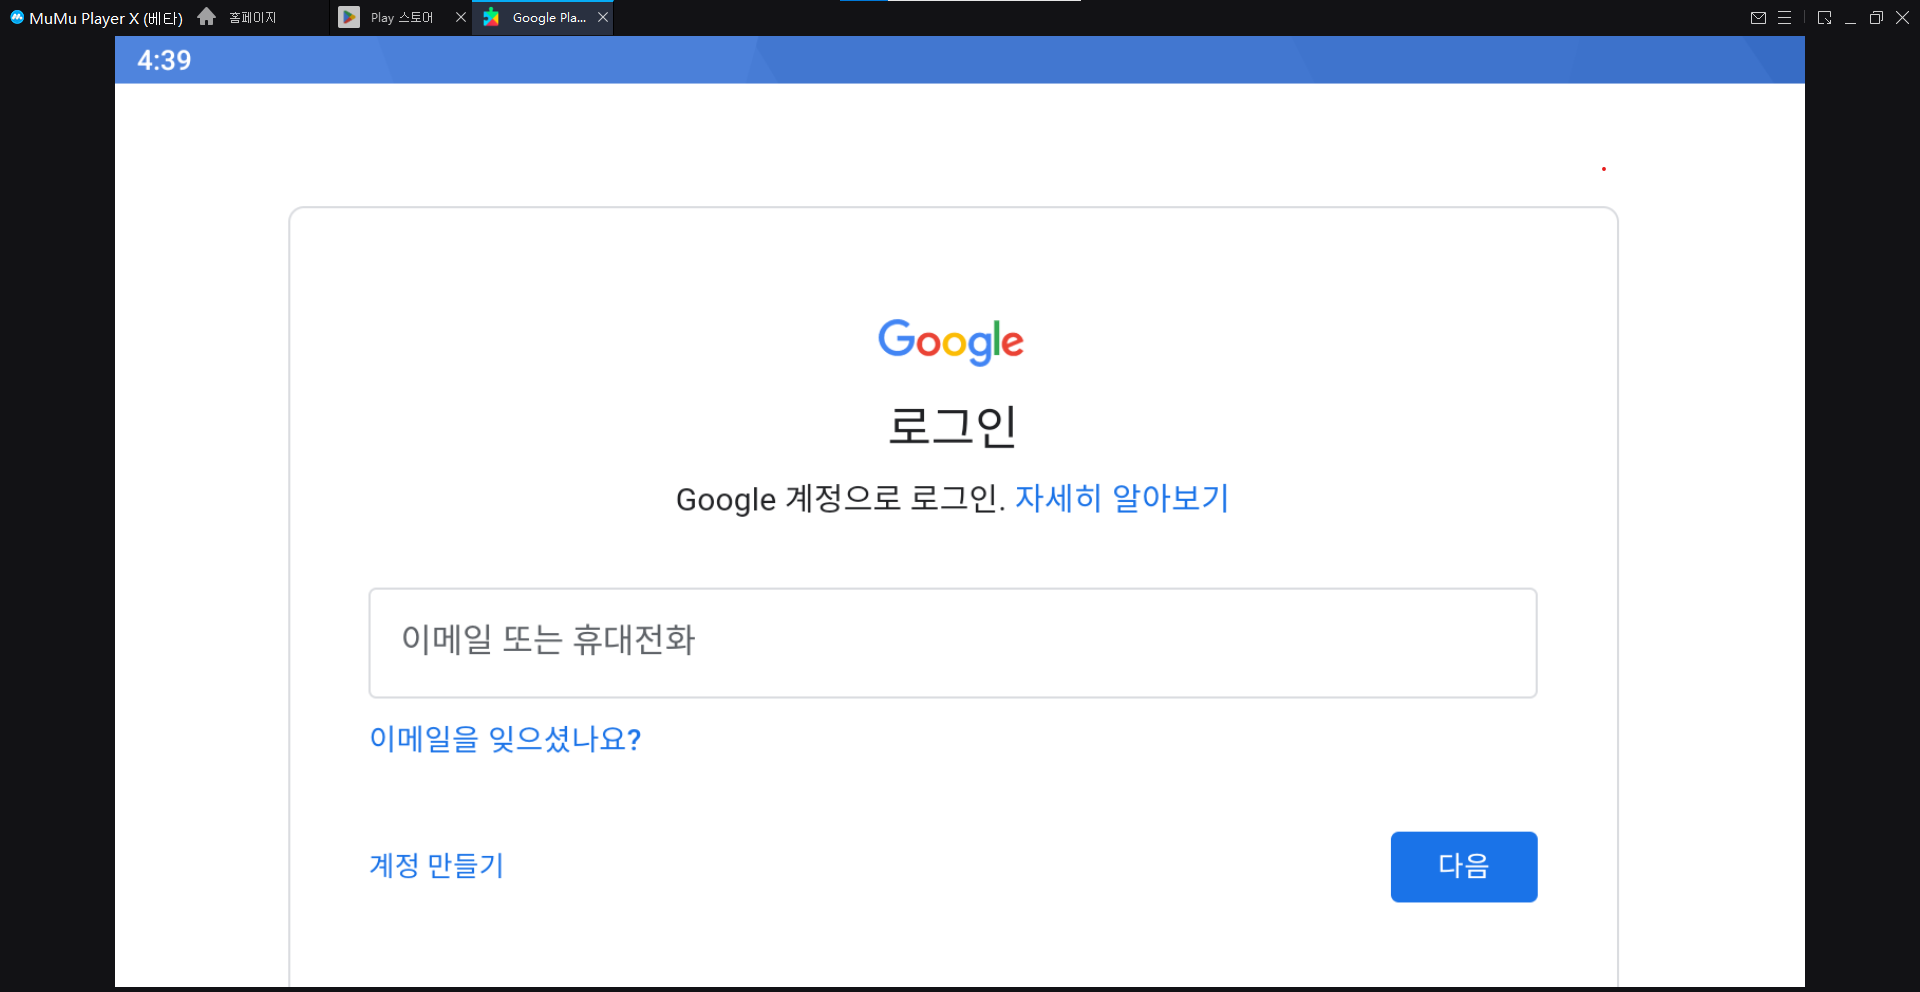 뮤뮤-다운로드-google-로그인